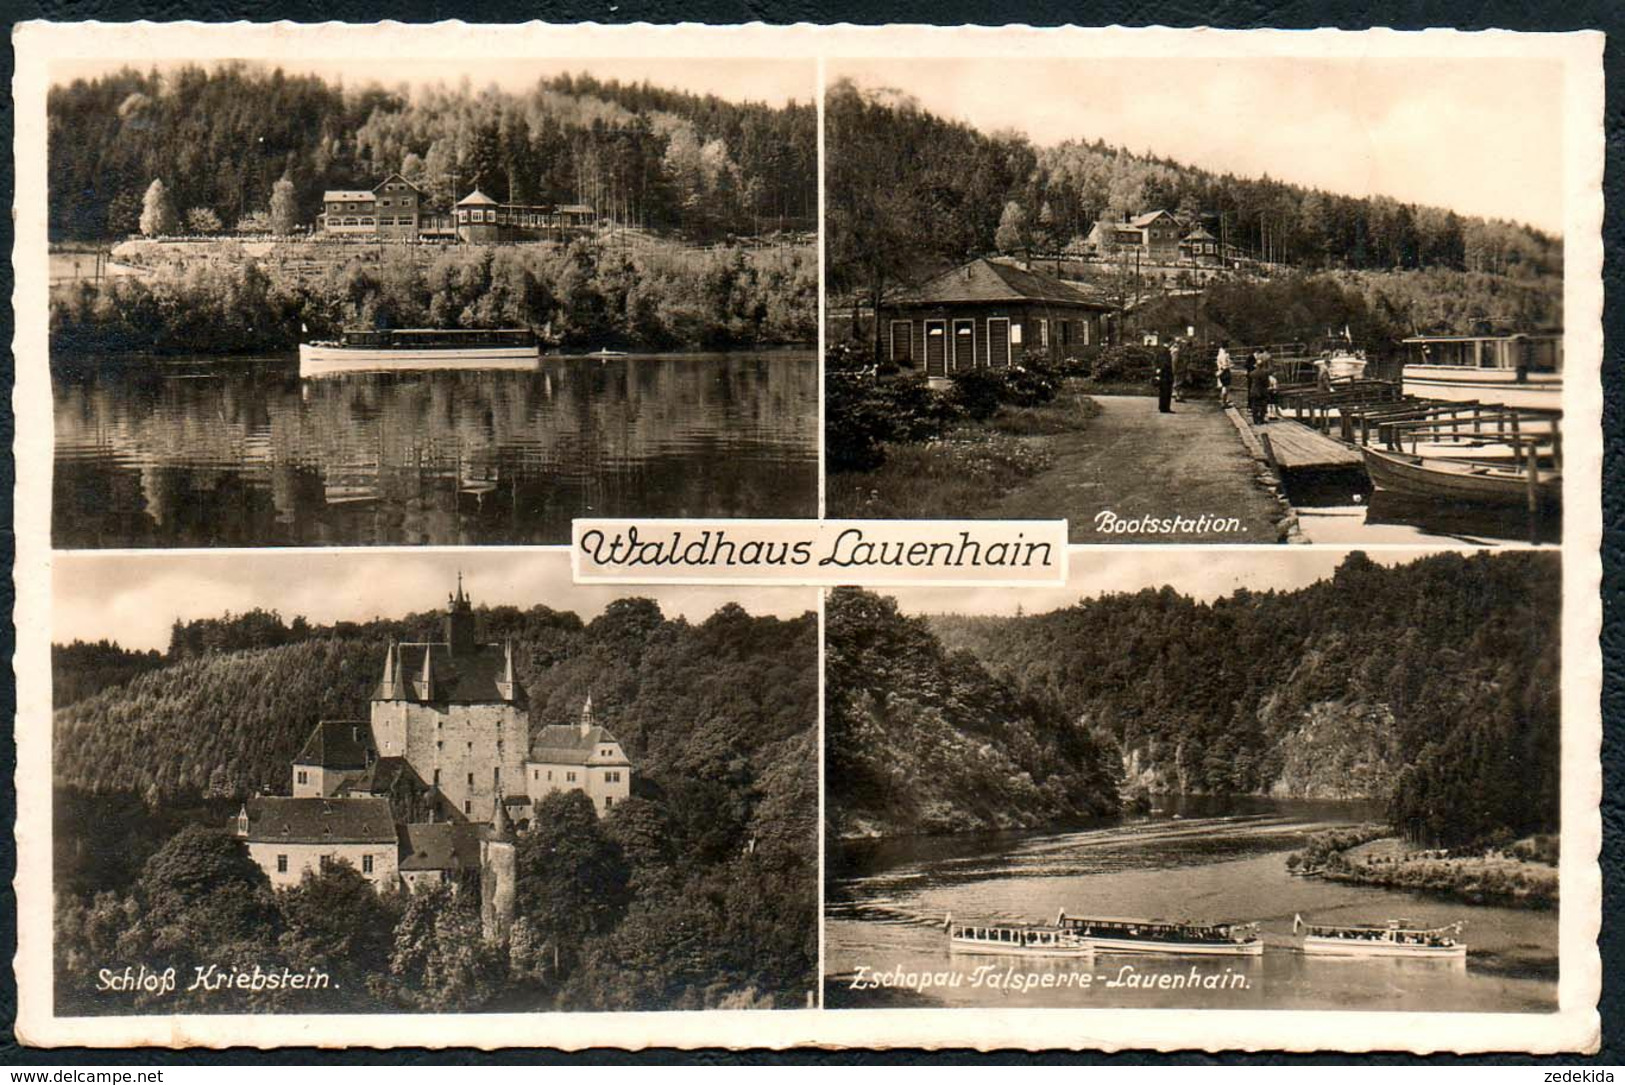 B5705 - Lauenhain Talsperre Bootsstation Burg Kriebstein - Verlag Landgraf - Feldpost 2. WK WW - Mittweida